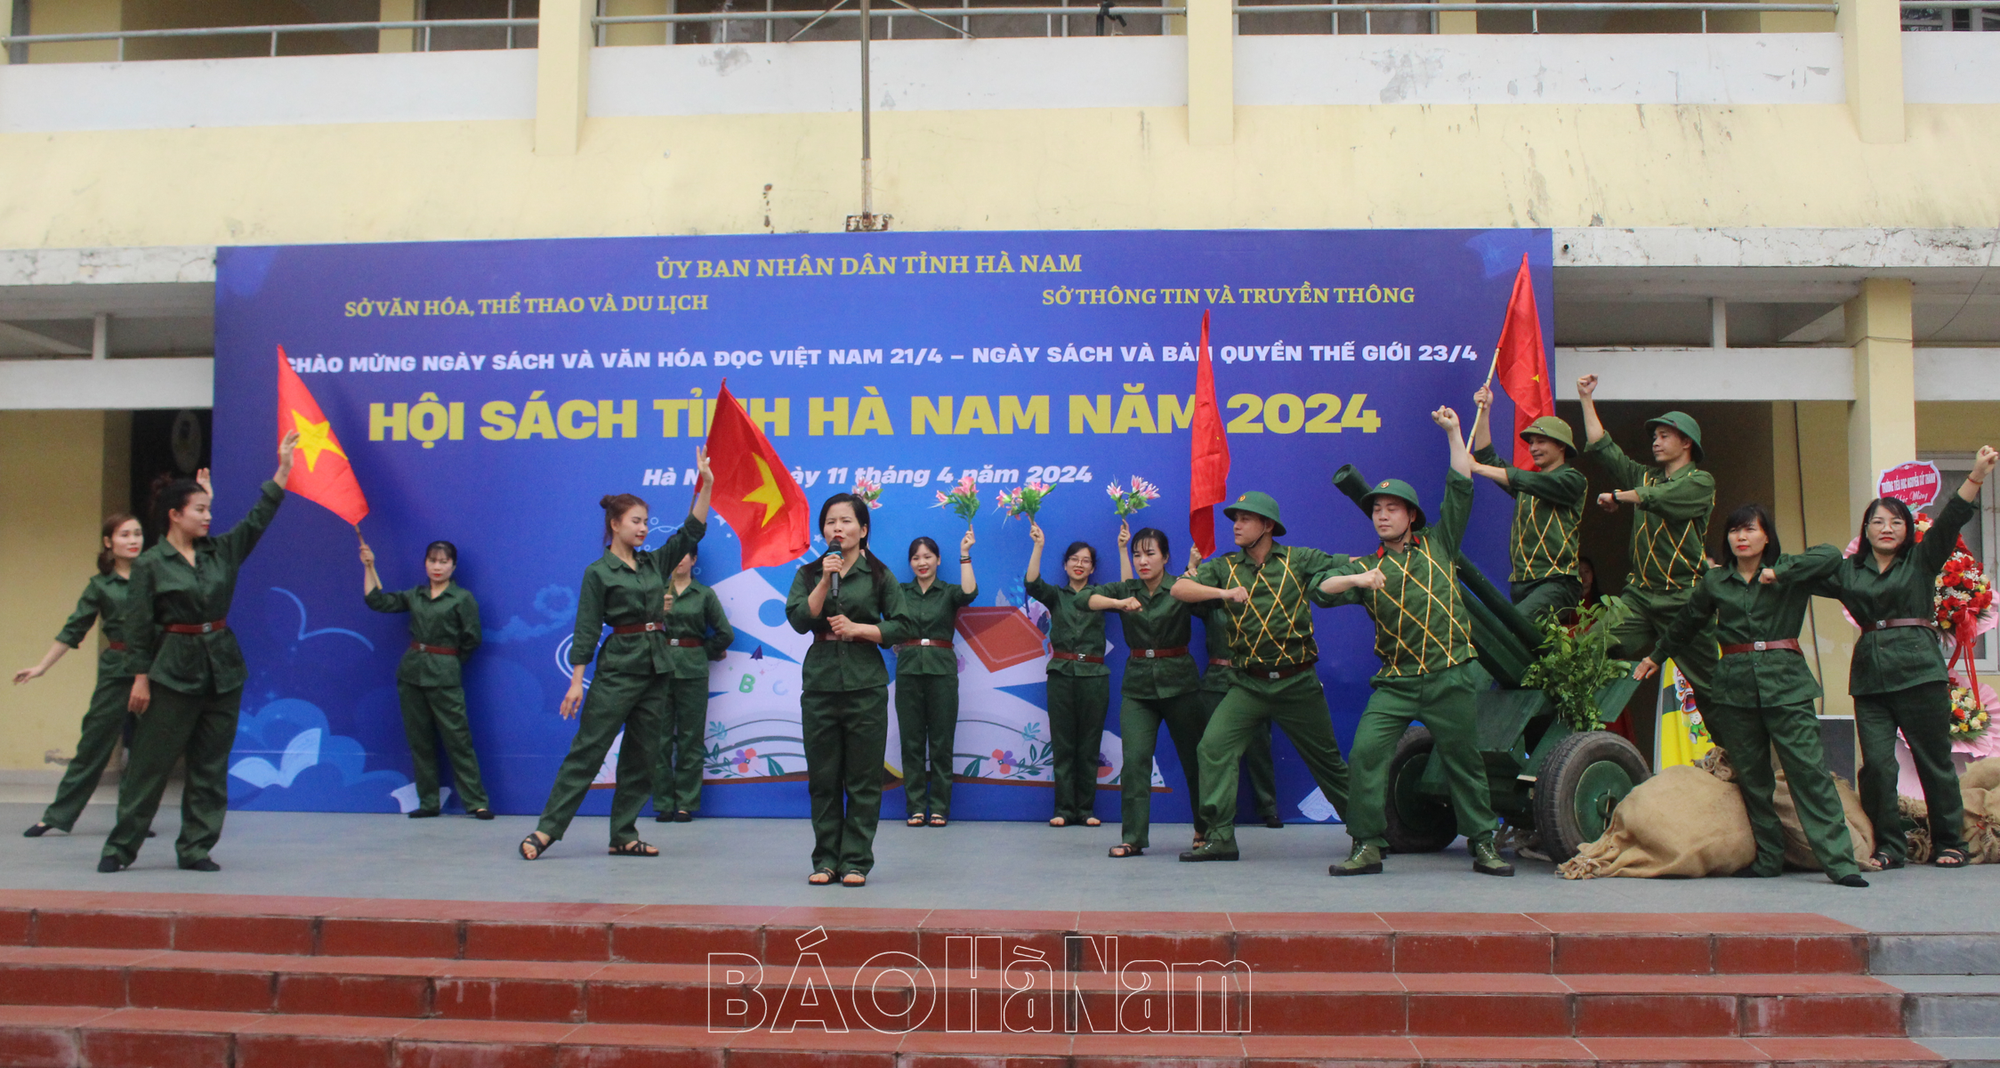 Hội sách tỉnh Hà Nam năm 2024 - Ảnh 3.